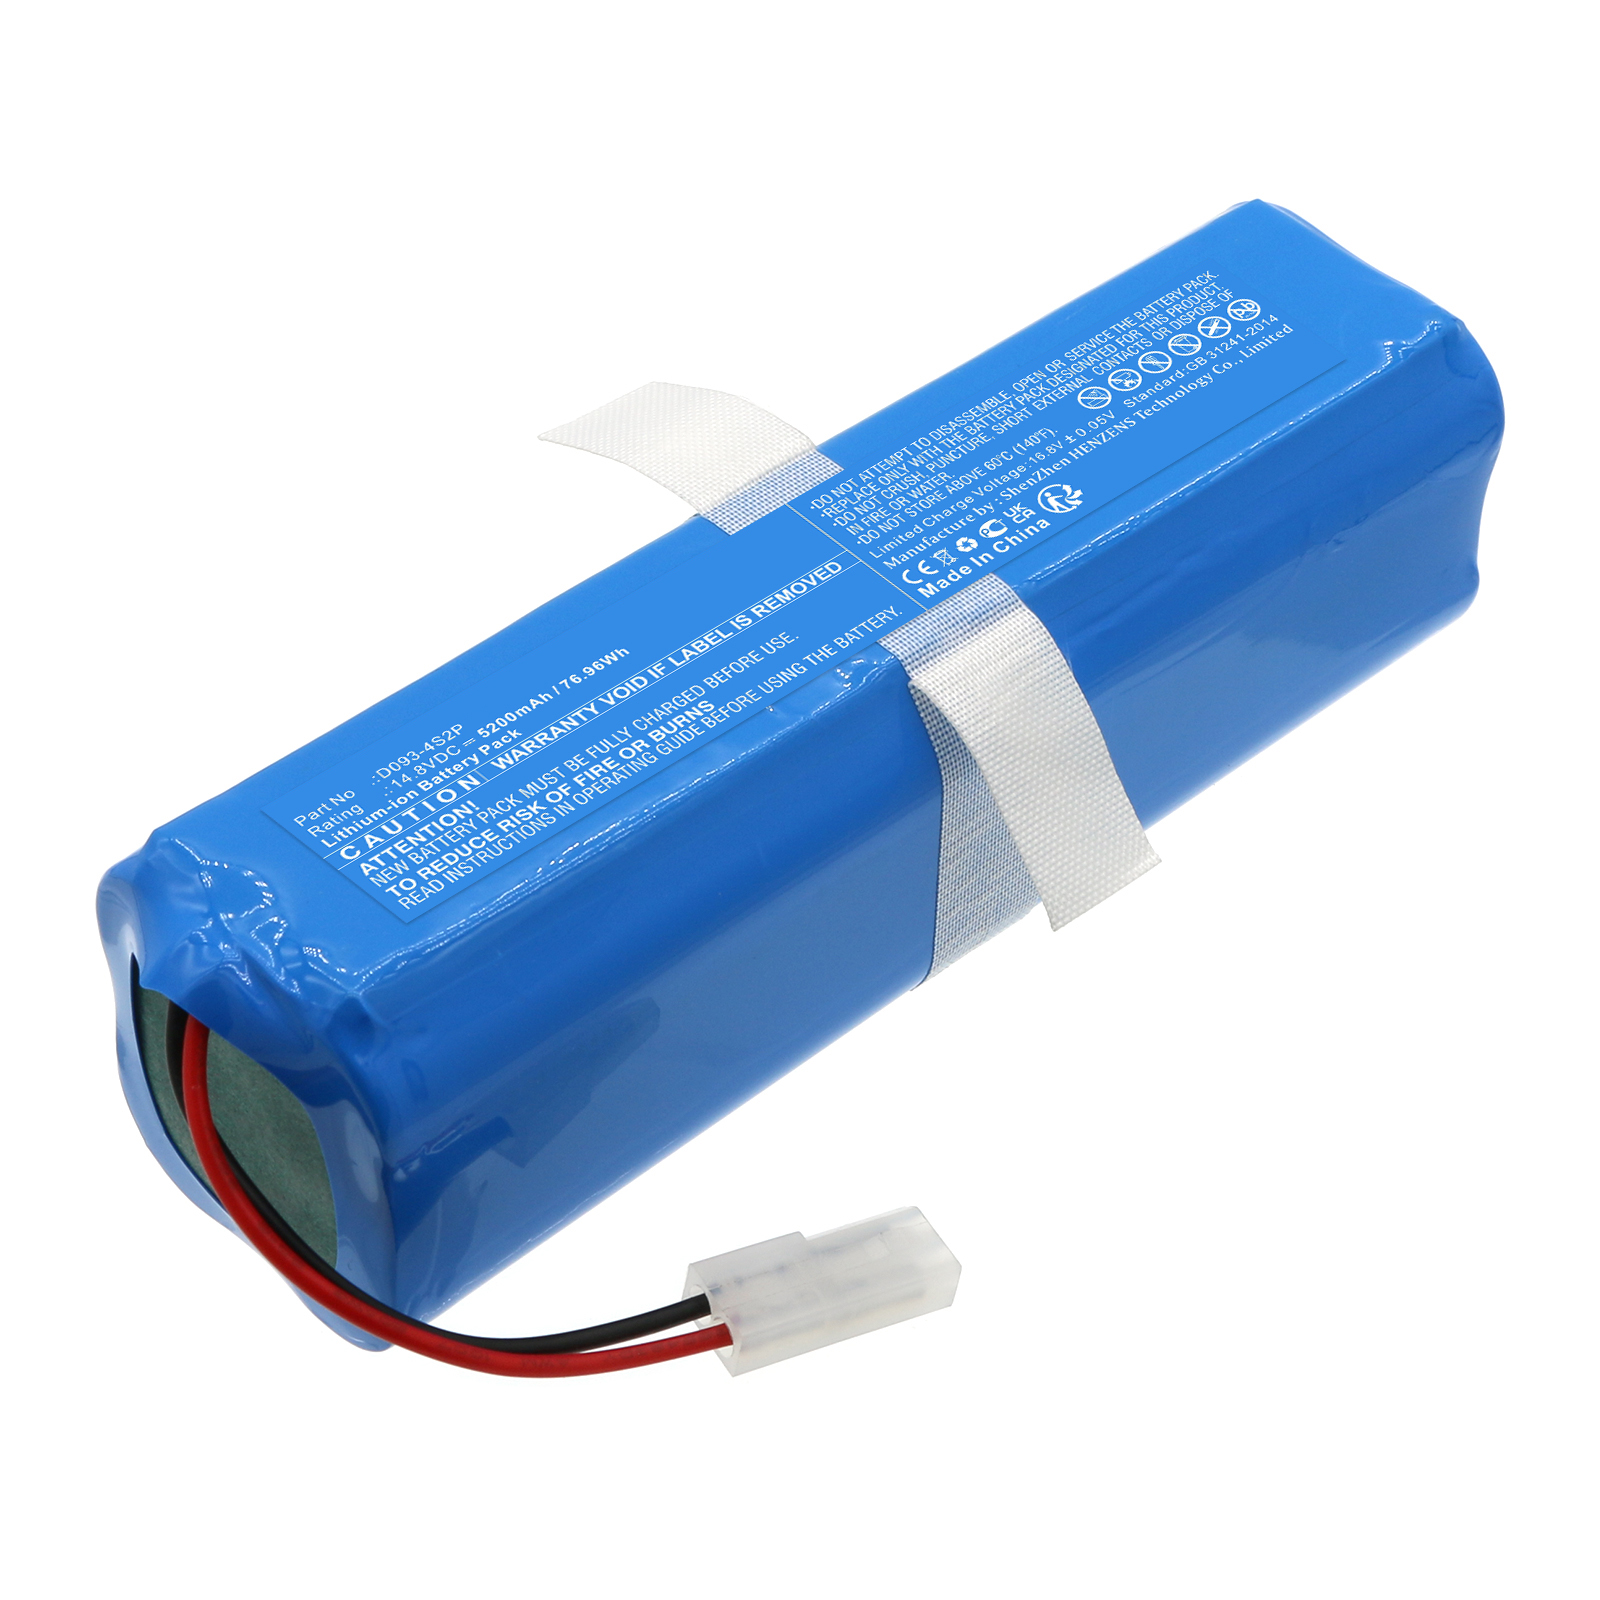 Synergy Digital Vacuum Cleaner Battery, Compatible with ROEMO D093-4S2P Vacuum Cleaner Battery (Li-ion, 14.8V, 5200mAh)